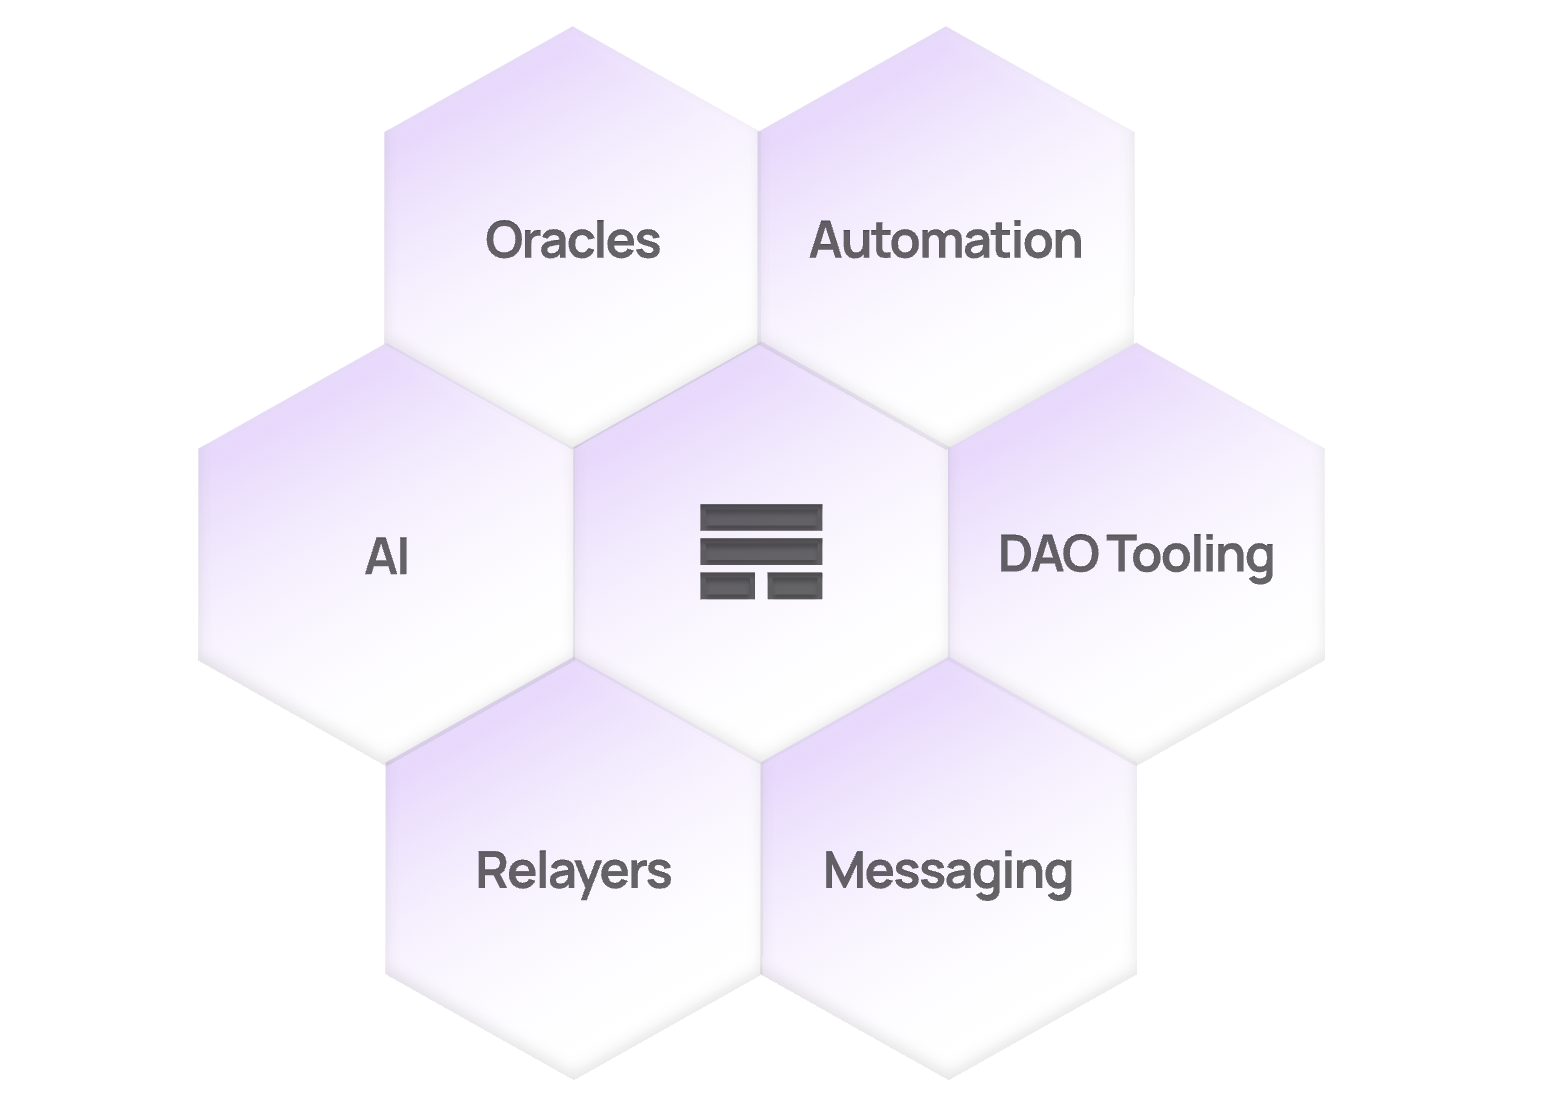 Olas network provides an ocean of services built on autonomous agent technology